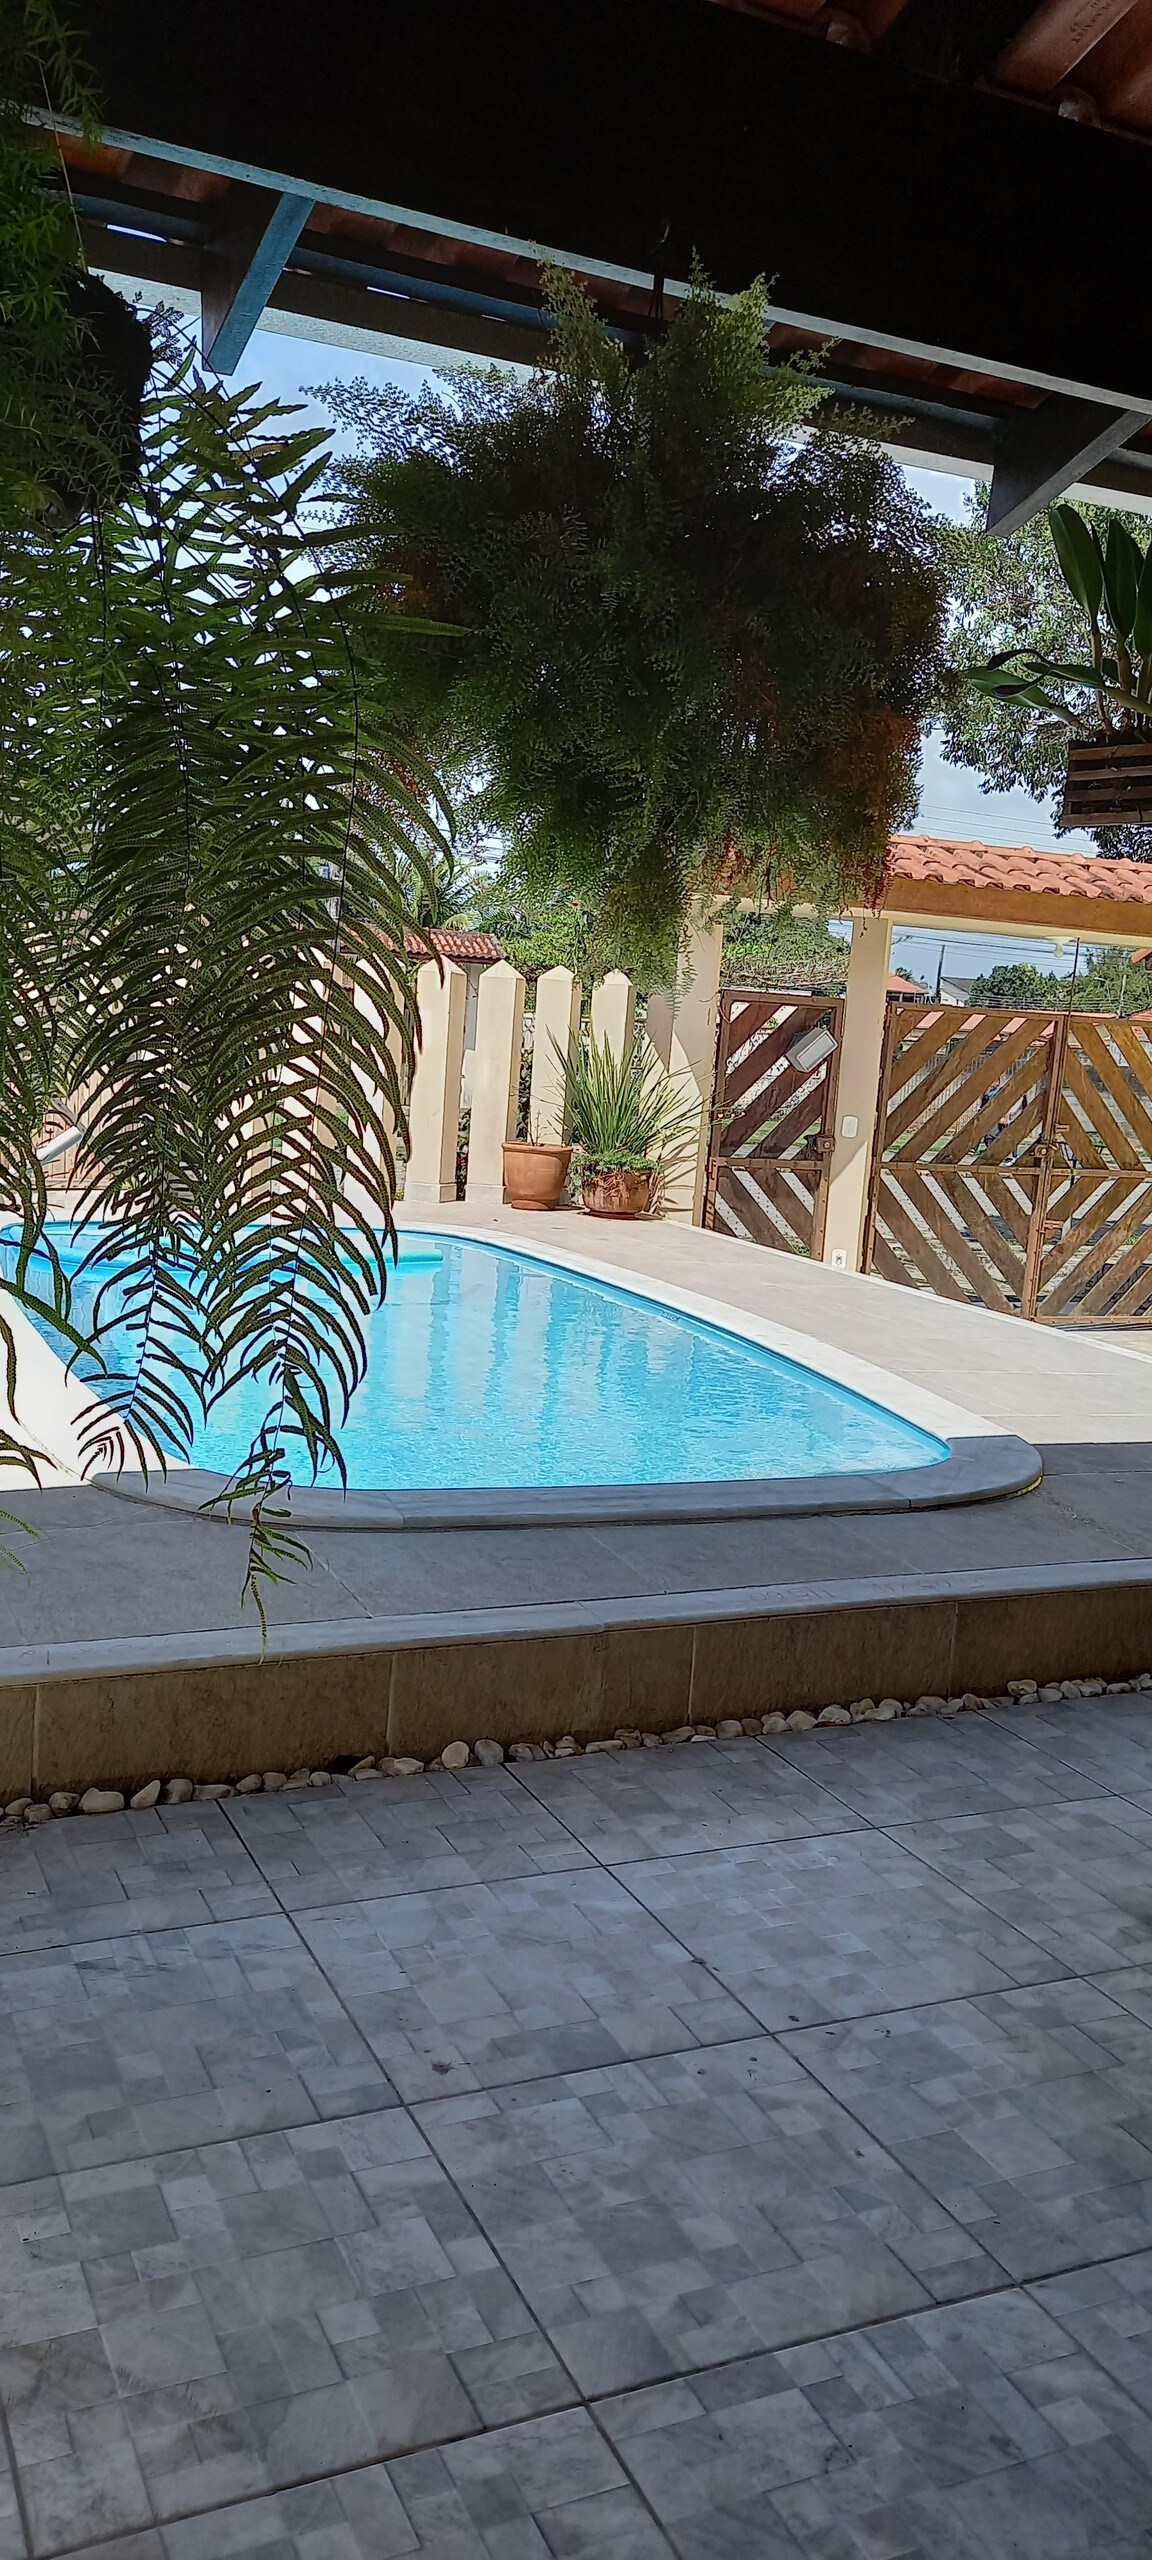 Casa c piscina em Caraguatatuba,bairro tranquilo.